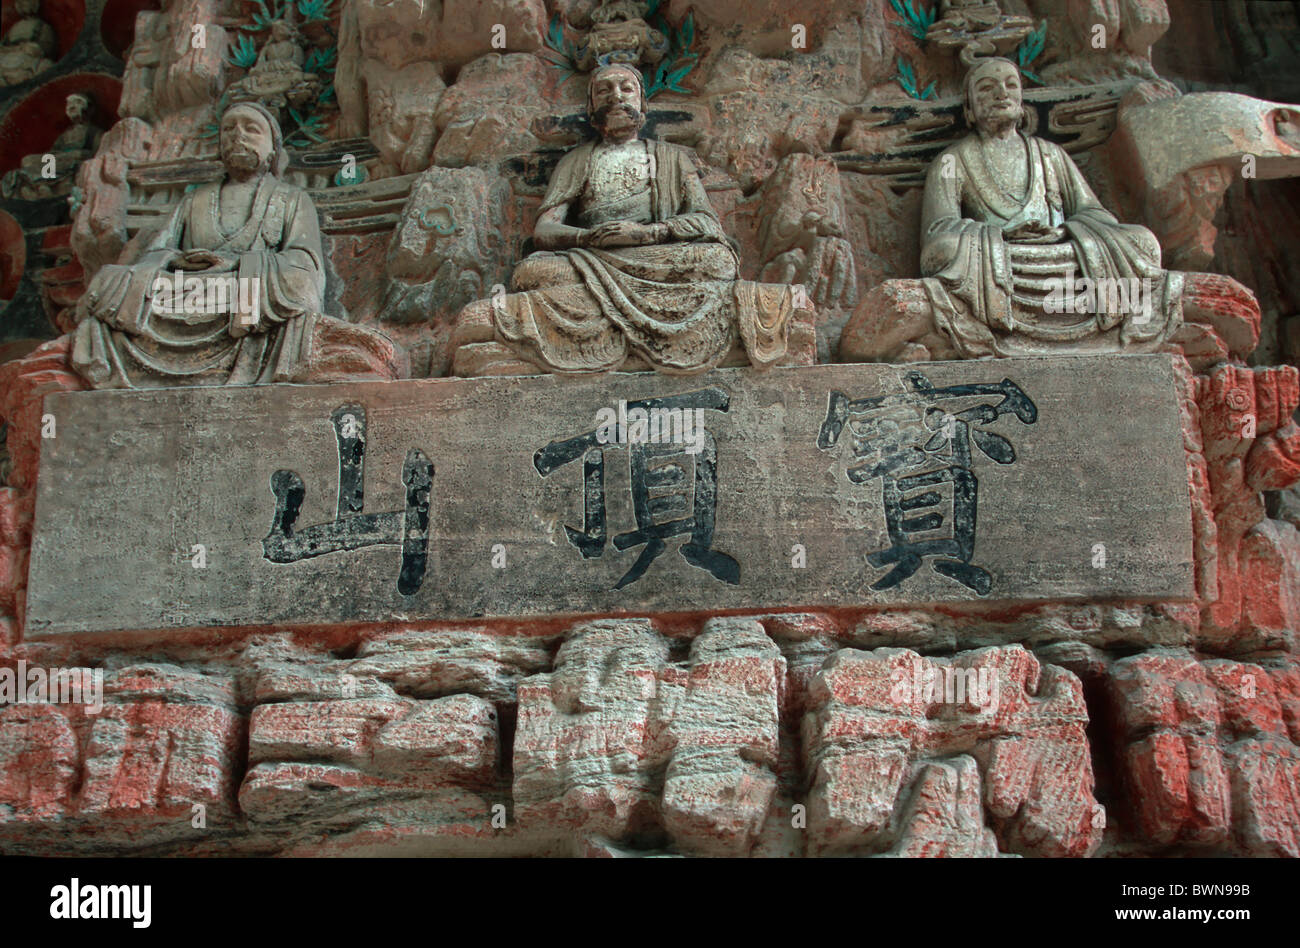 Chine Asie particulier n° 5 de créneau sculptures rupestres de Dazu Dynastie Tang Baodingshan Province du Sichuan U Banque D'Images